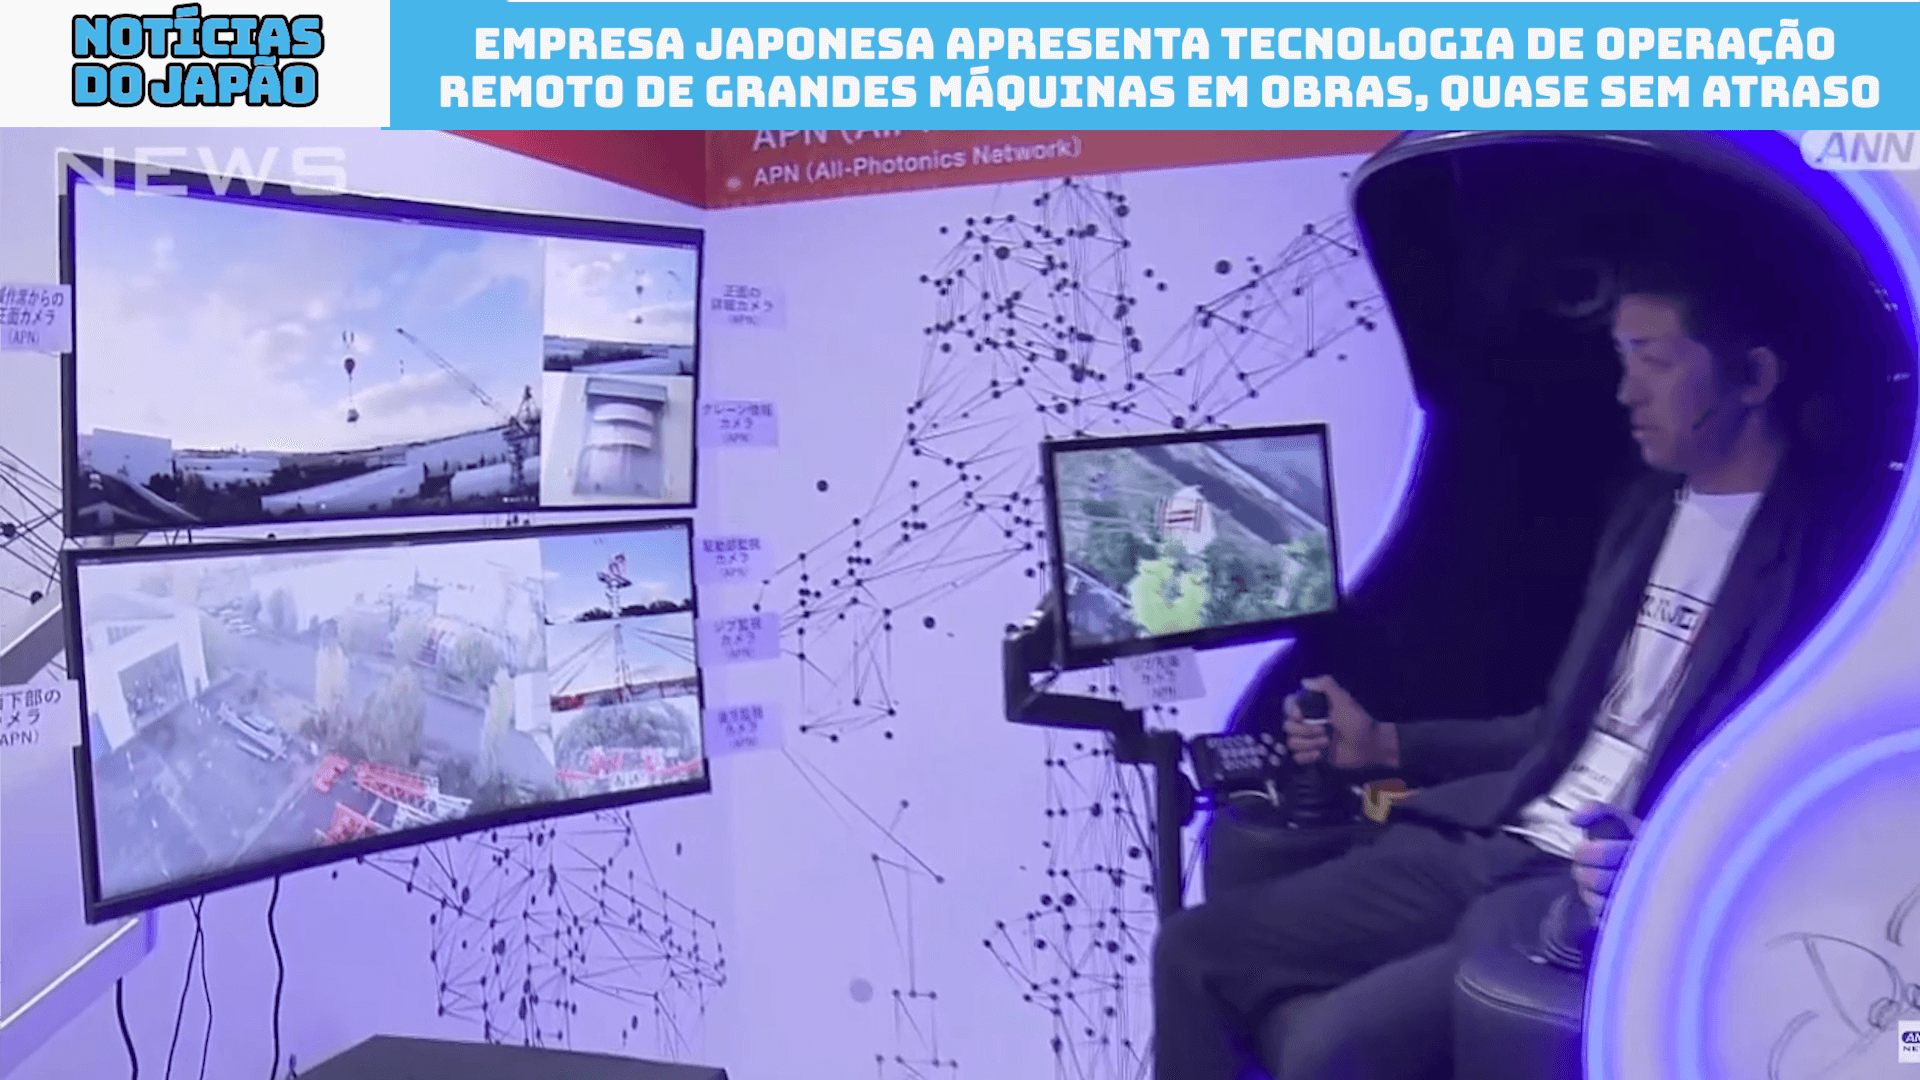 Empresa japonesa apresenta tecnologia de operação remoto de grandes máquinas em obras, quase sem atraso